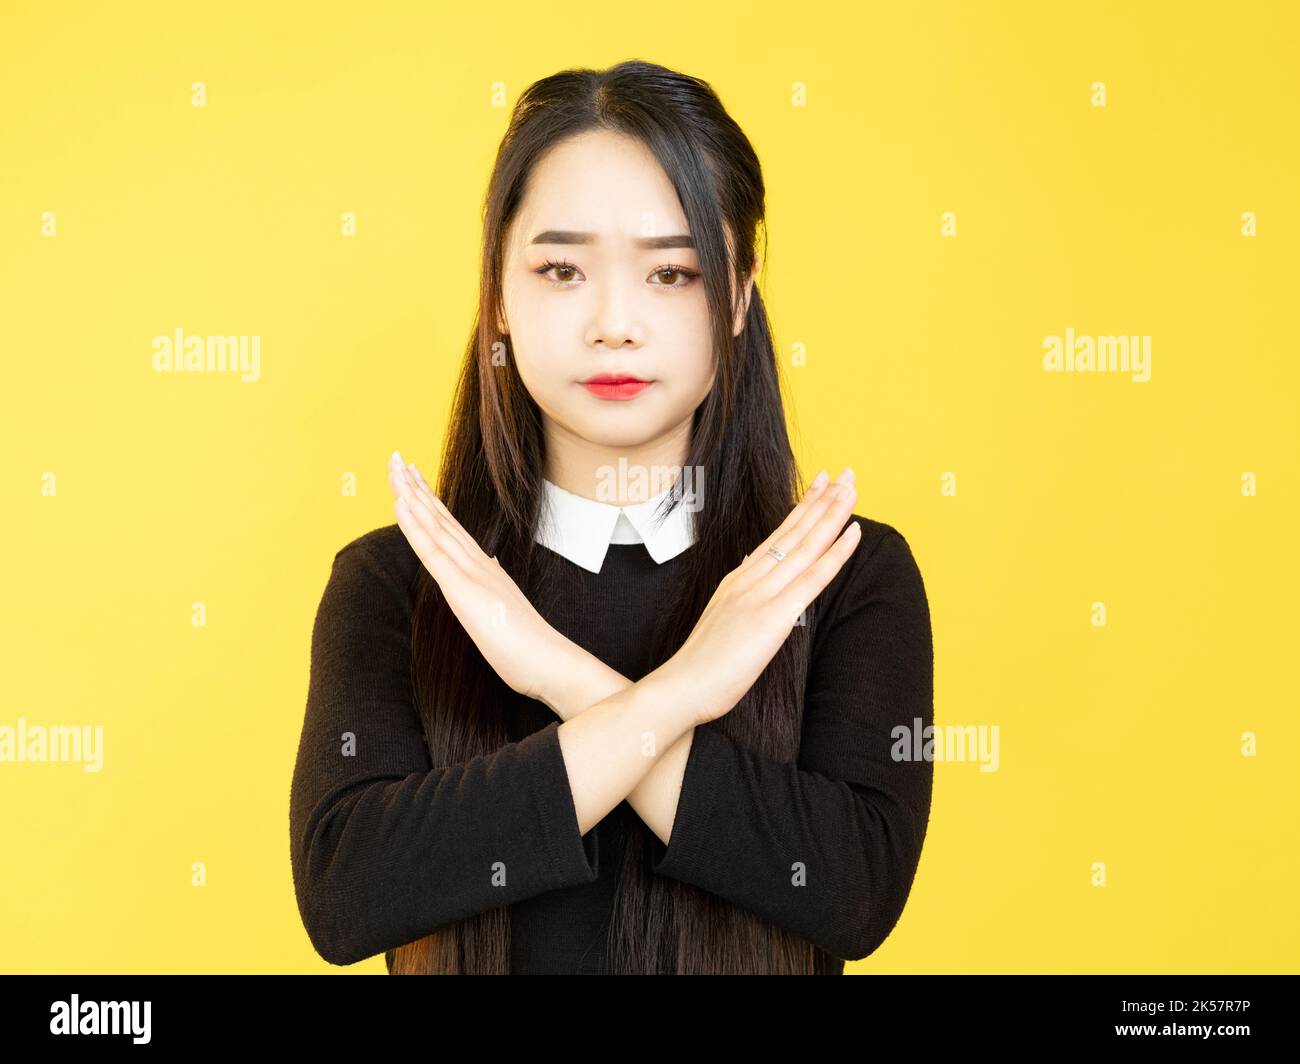 Weigerung der Frau Stop Gesture Verbot gekreuzte Hände Zeichen Stockfoto